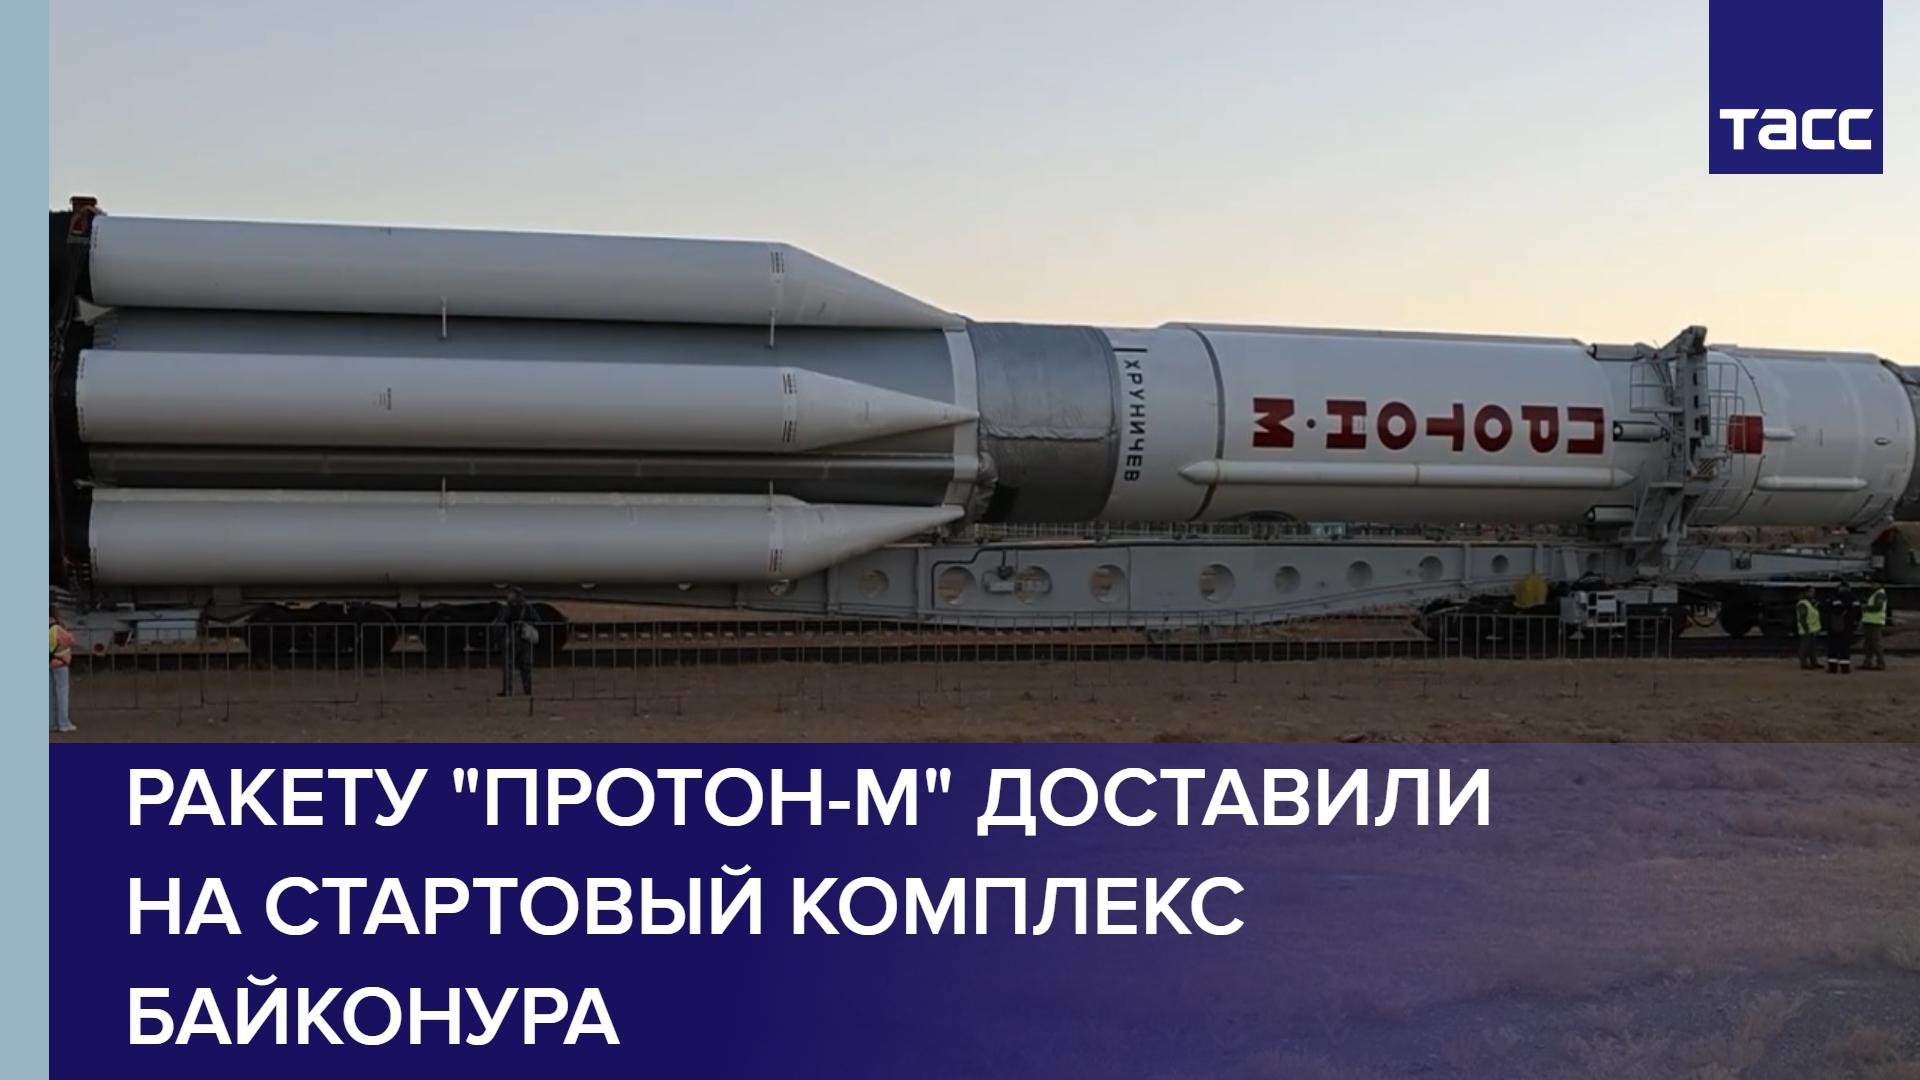 Ракету "Протон-М" доставили на стартовый комплекс Байконура